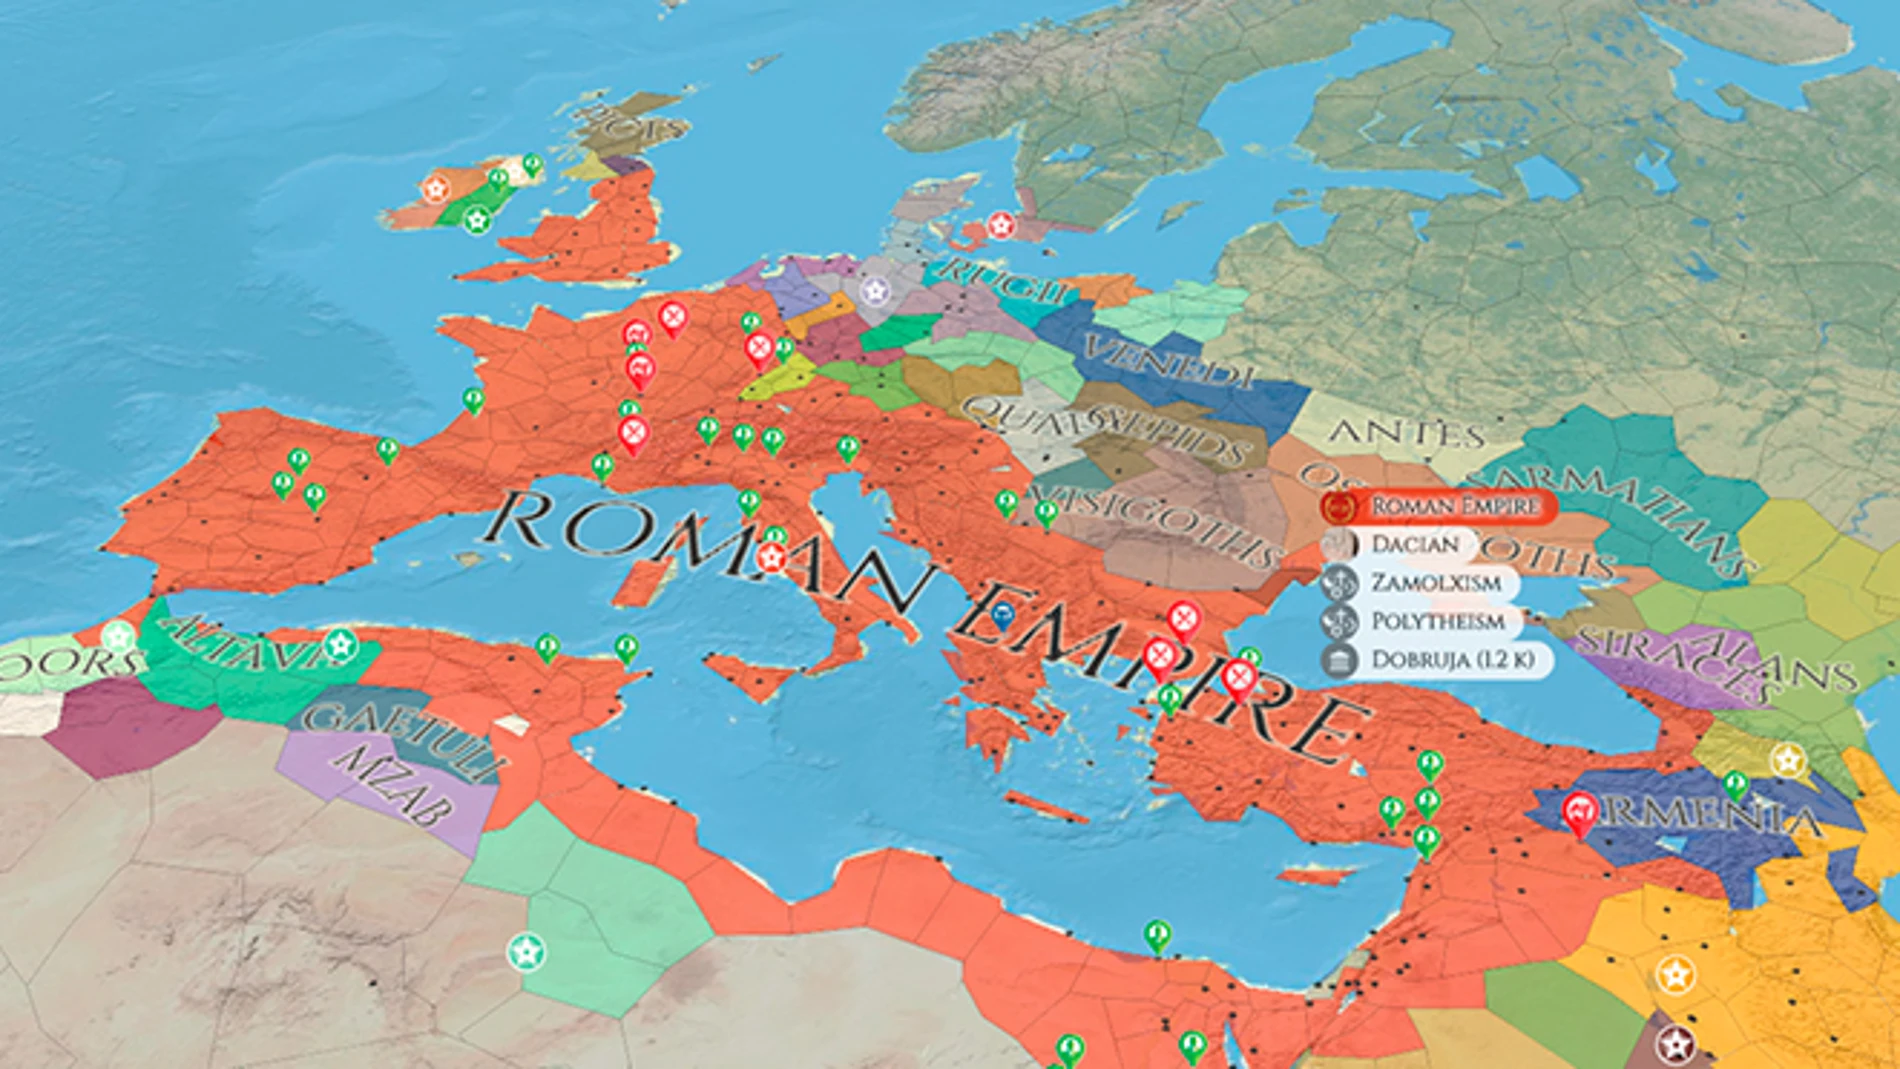 En este mapa interactivo puedes ver la historia del mundo de los últimos 4000 años.